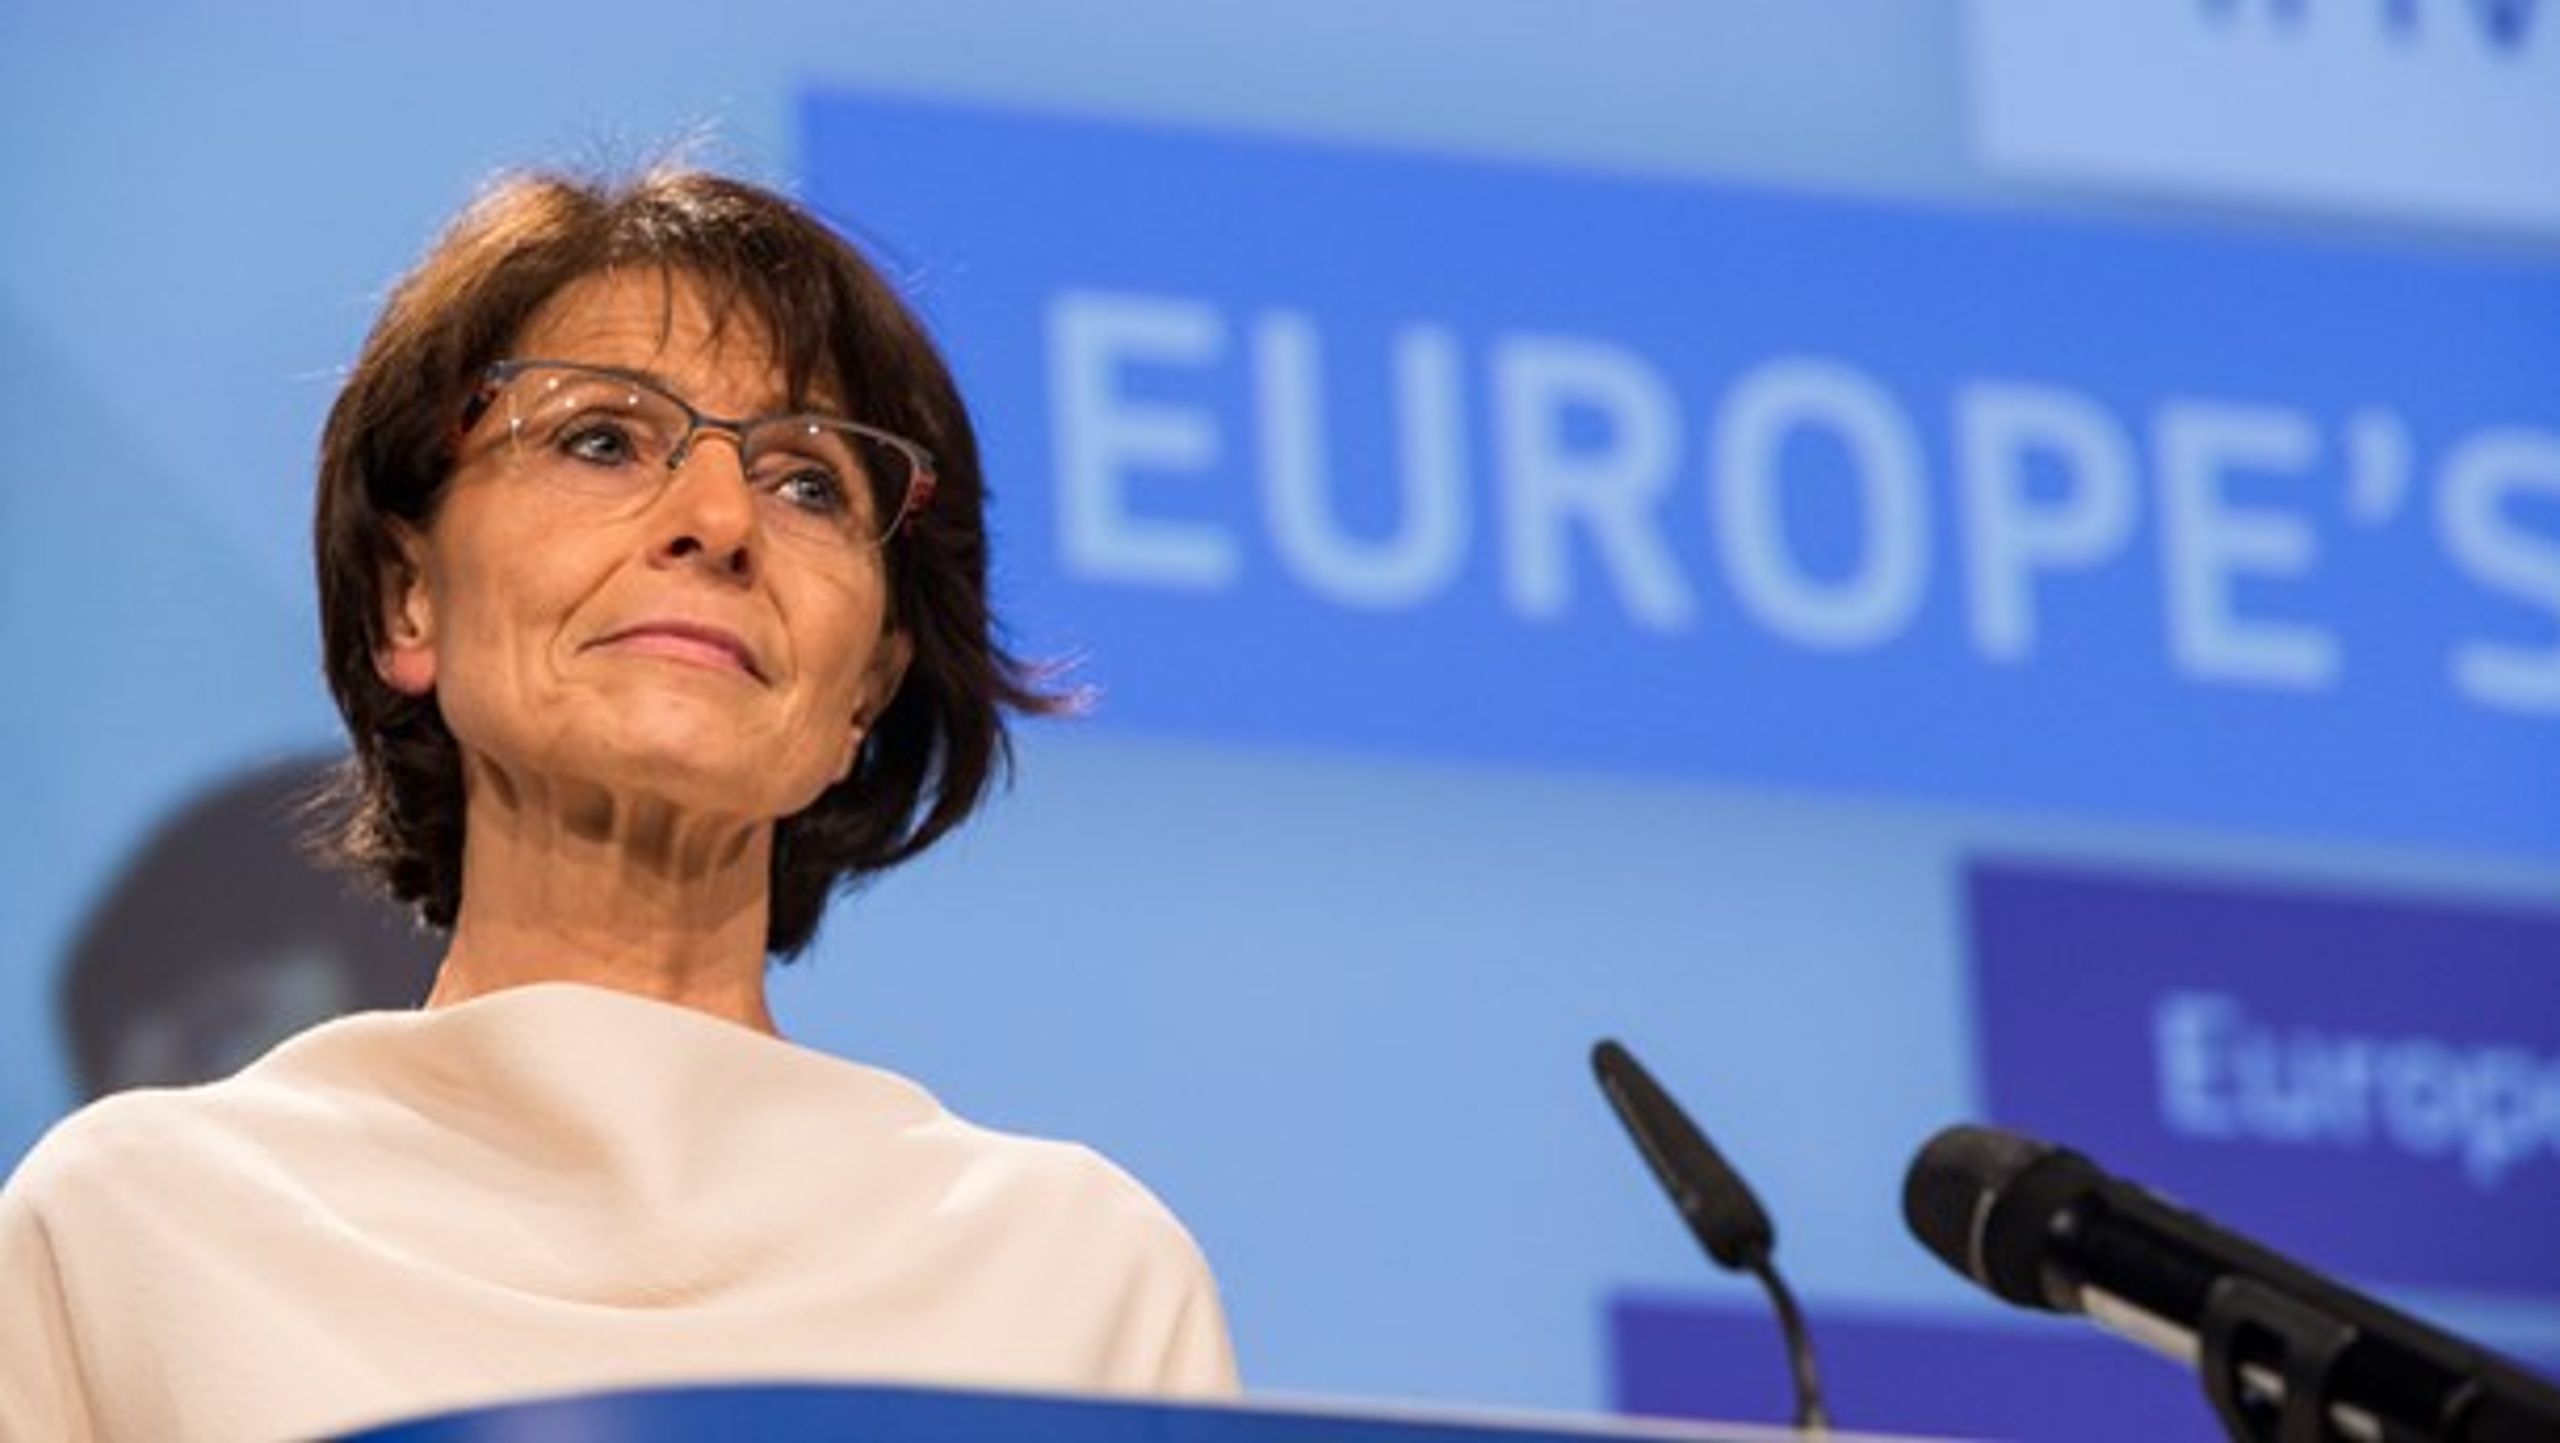 Ifølge EU's kommissær for beskæftigelse, Marianne Thyssen, handler det nye udspil om "fairness". Arkivfoto.